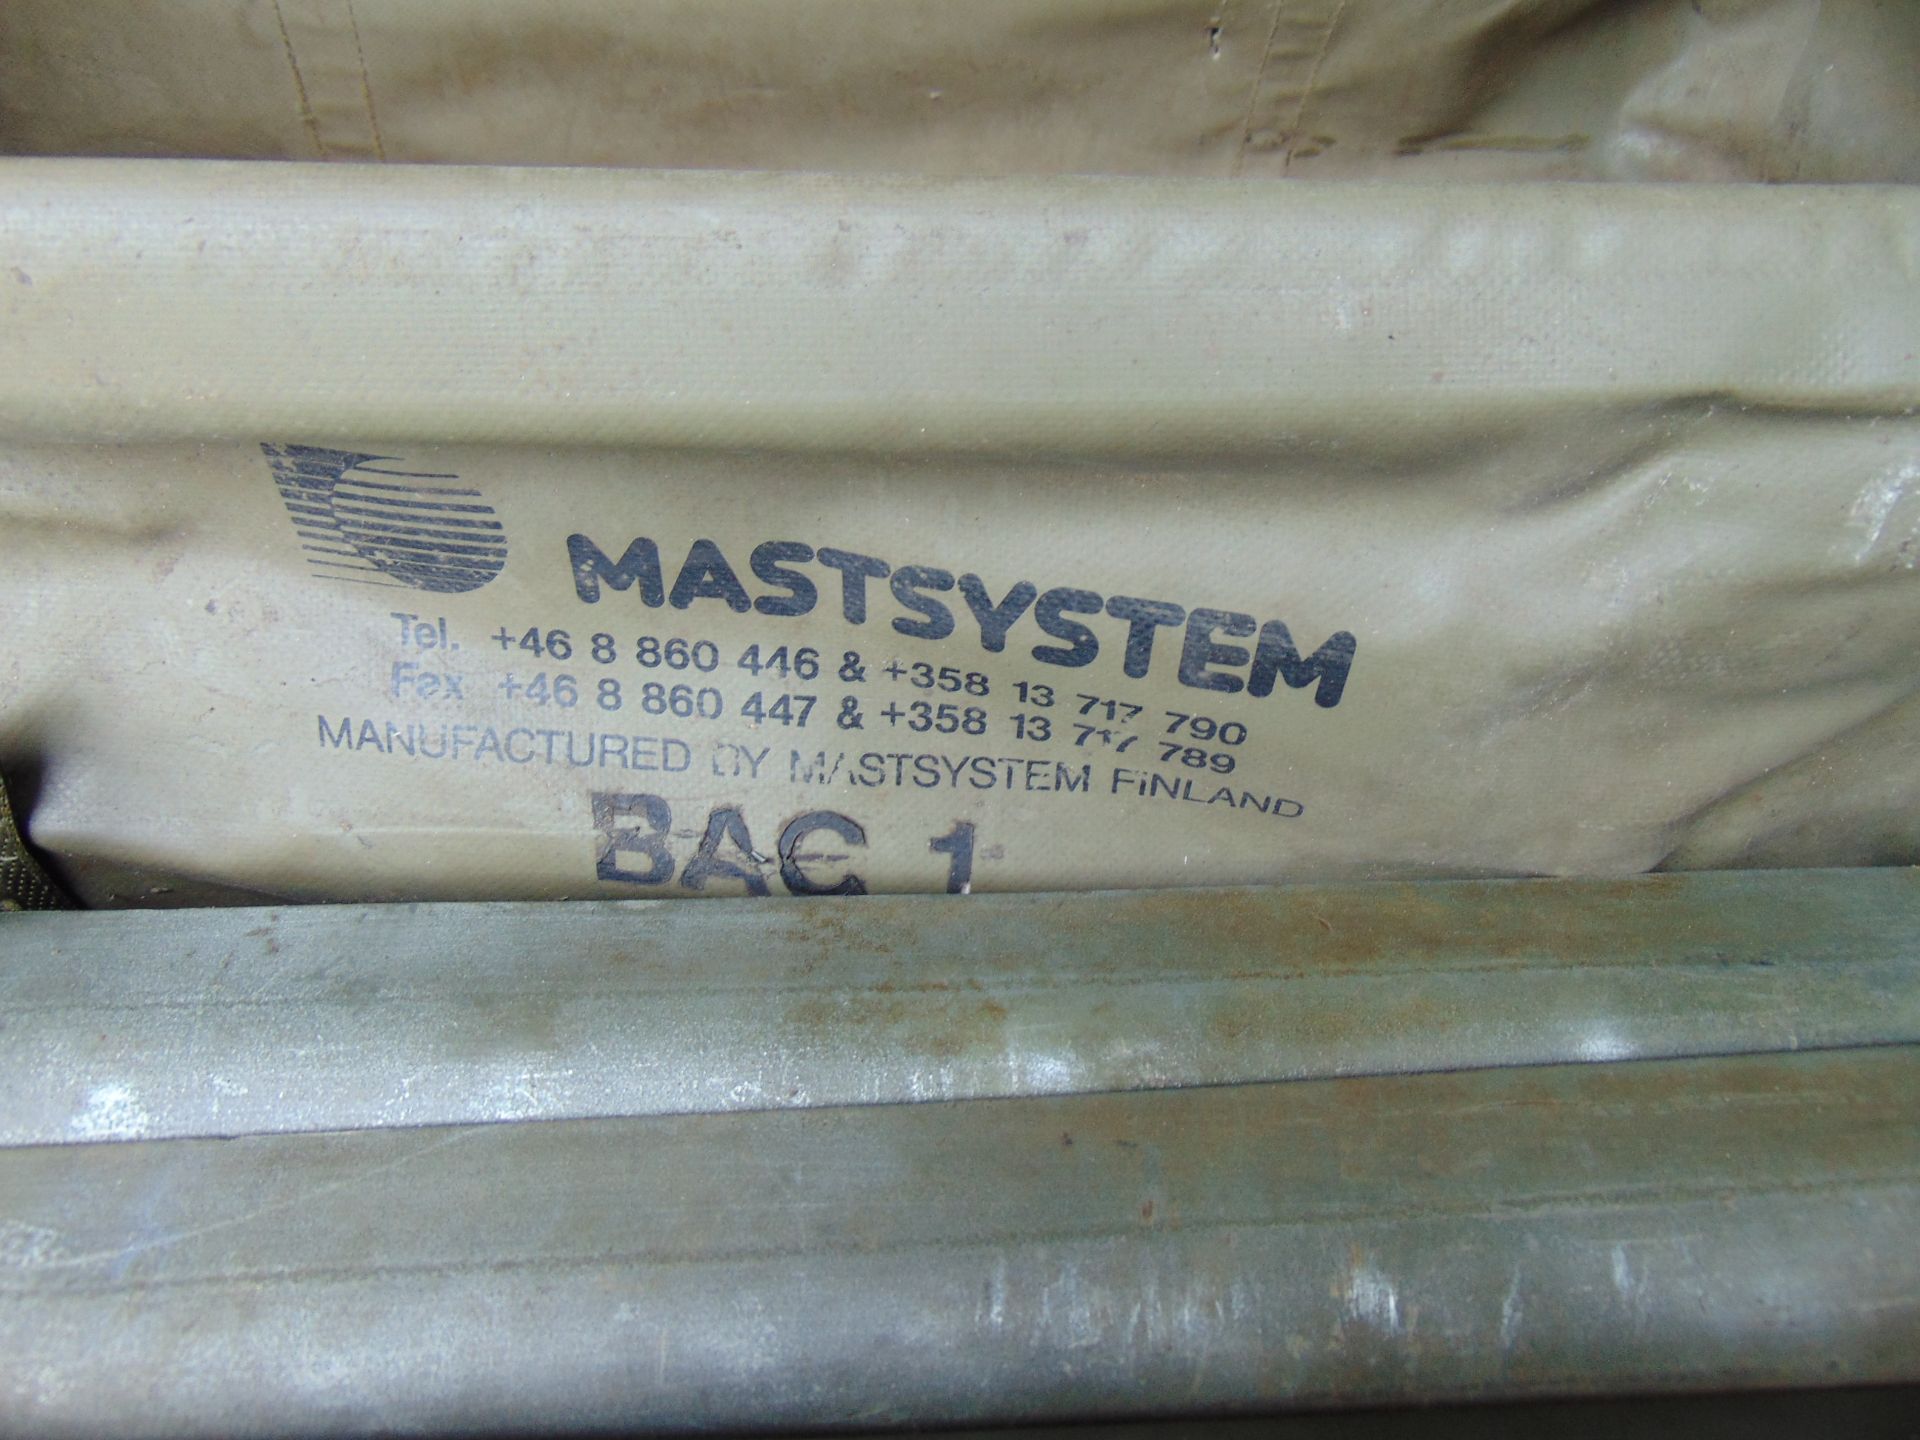 New Unissued MastSystem c/w Bag - Image 5 of 8